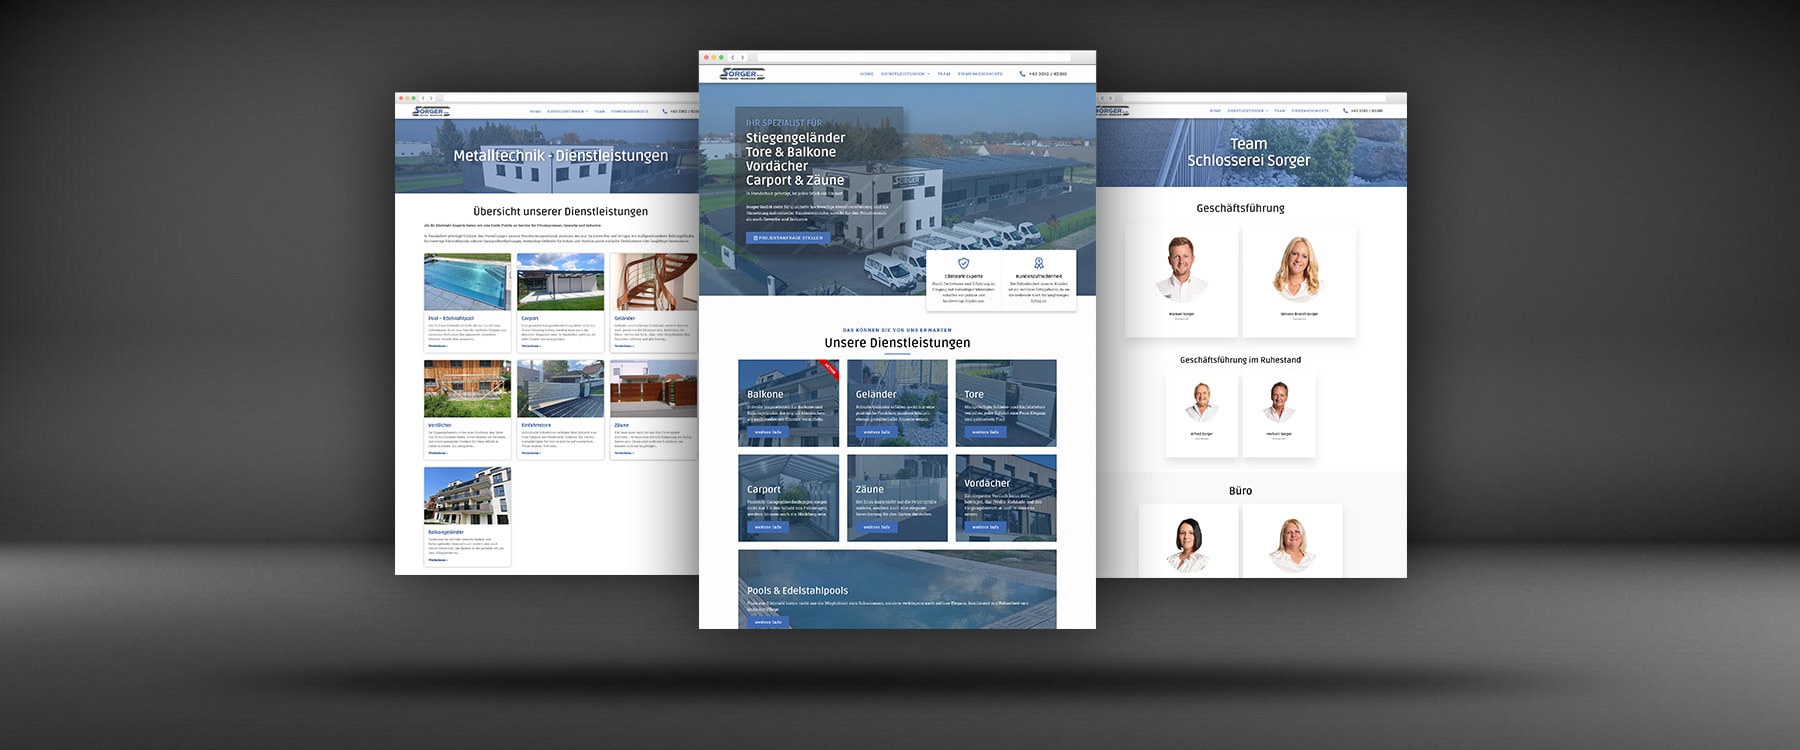 Webdesign Fürstenfeld - Responsiv Websites für Unternehmen